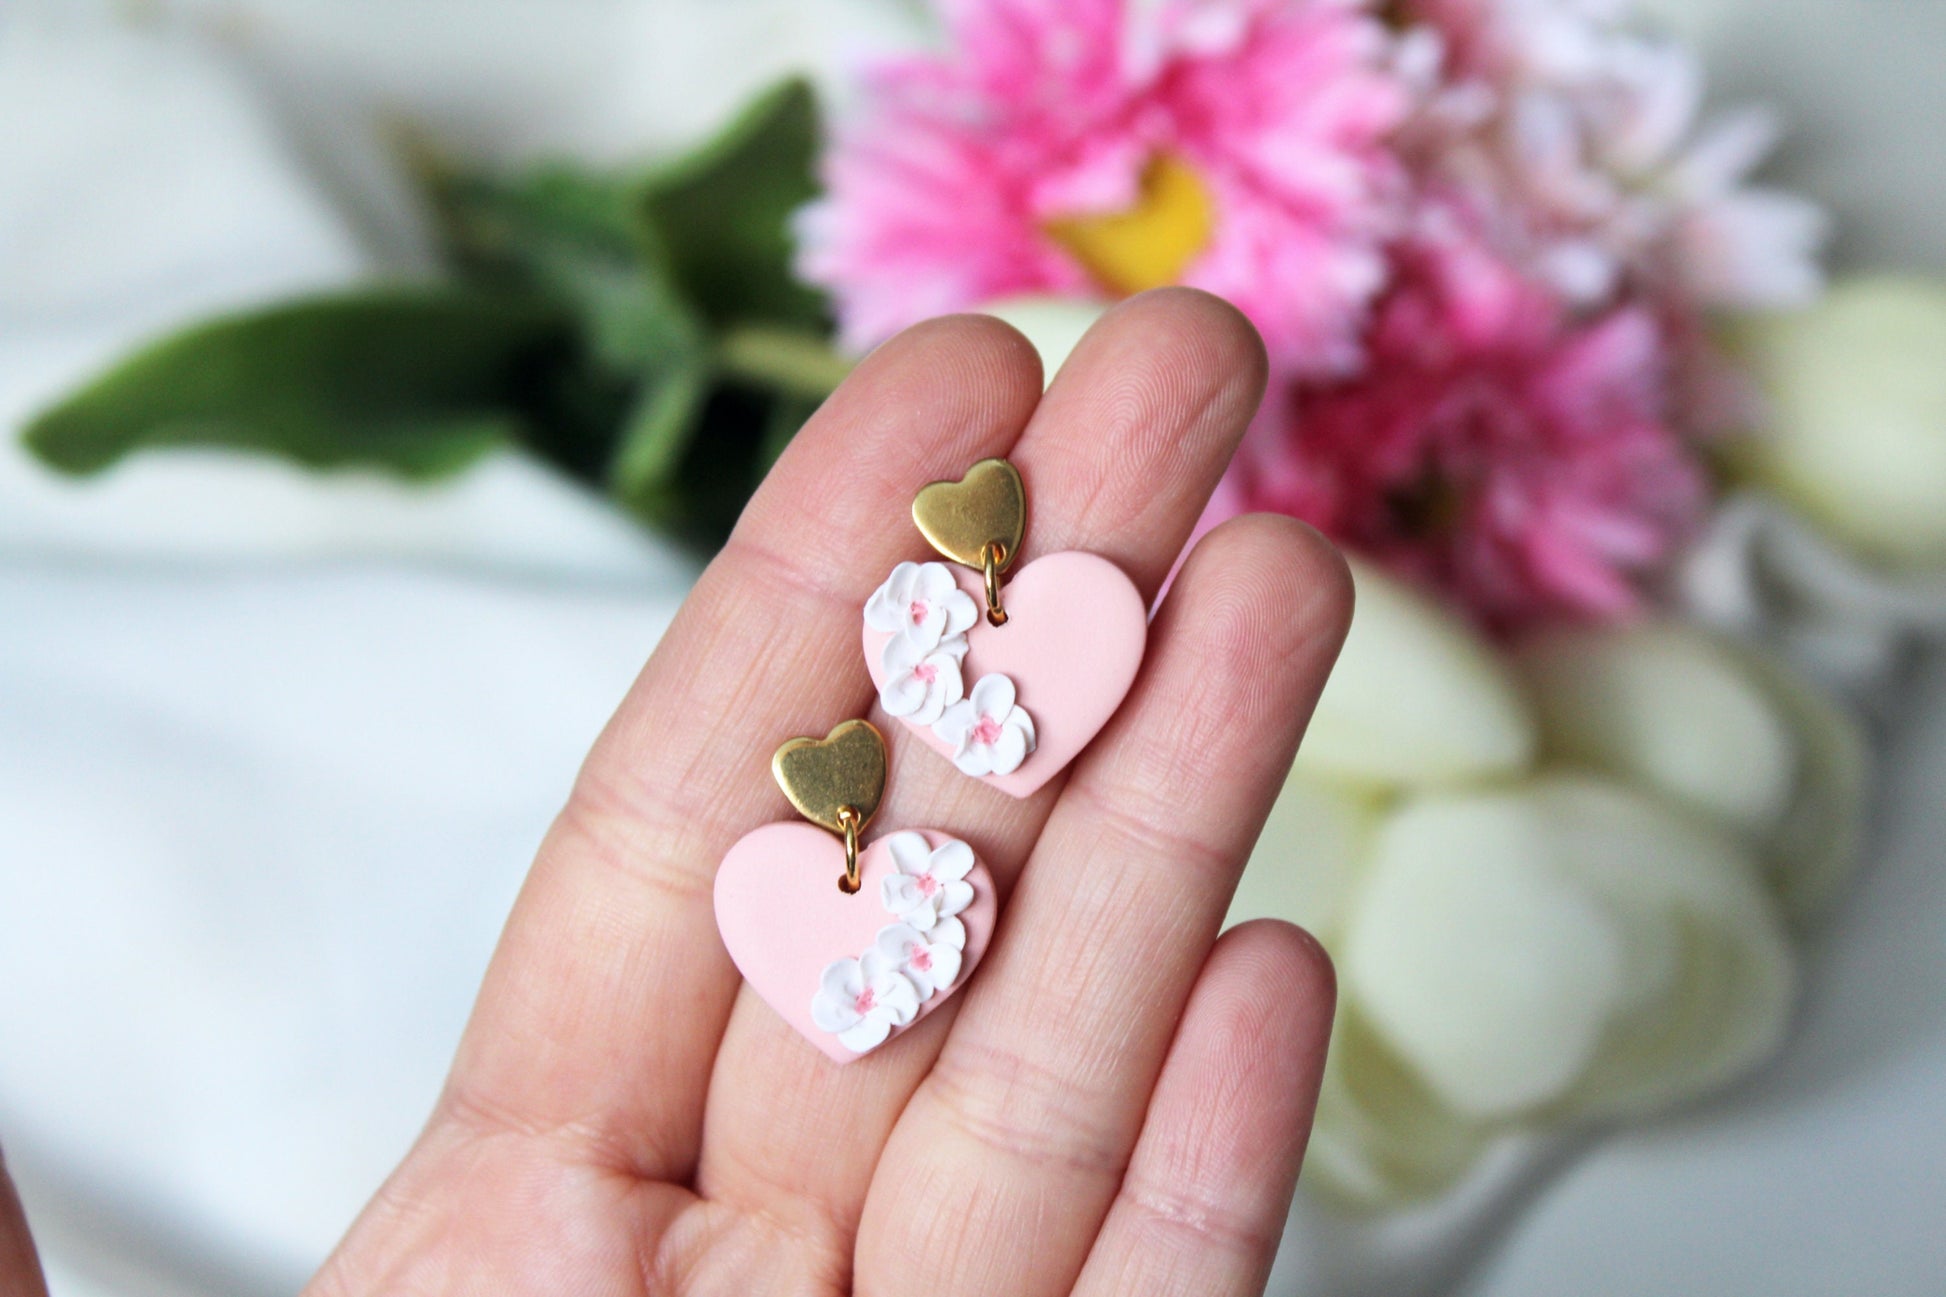 Heart Earrings, Valentine's Day Earrings, Polymer Clay Earrings, Clay Earrings, Floral Earrings, Cute Earrings, Pink, Handmade Jewelry, Gift